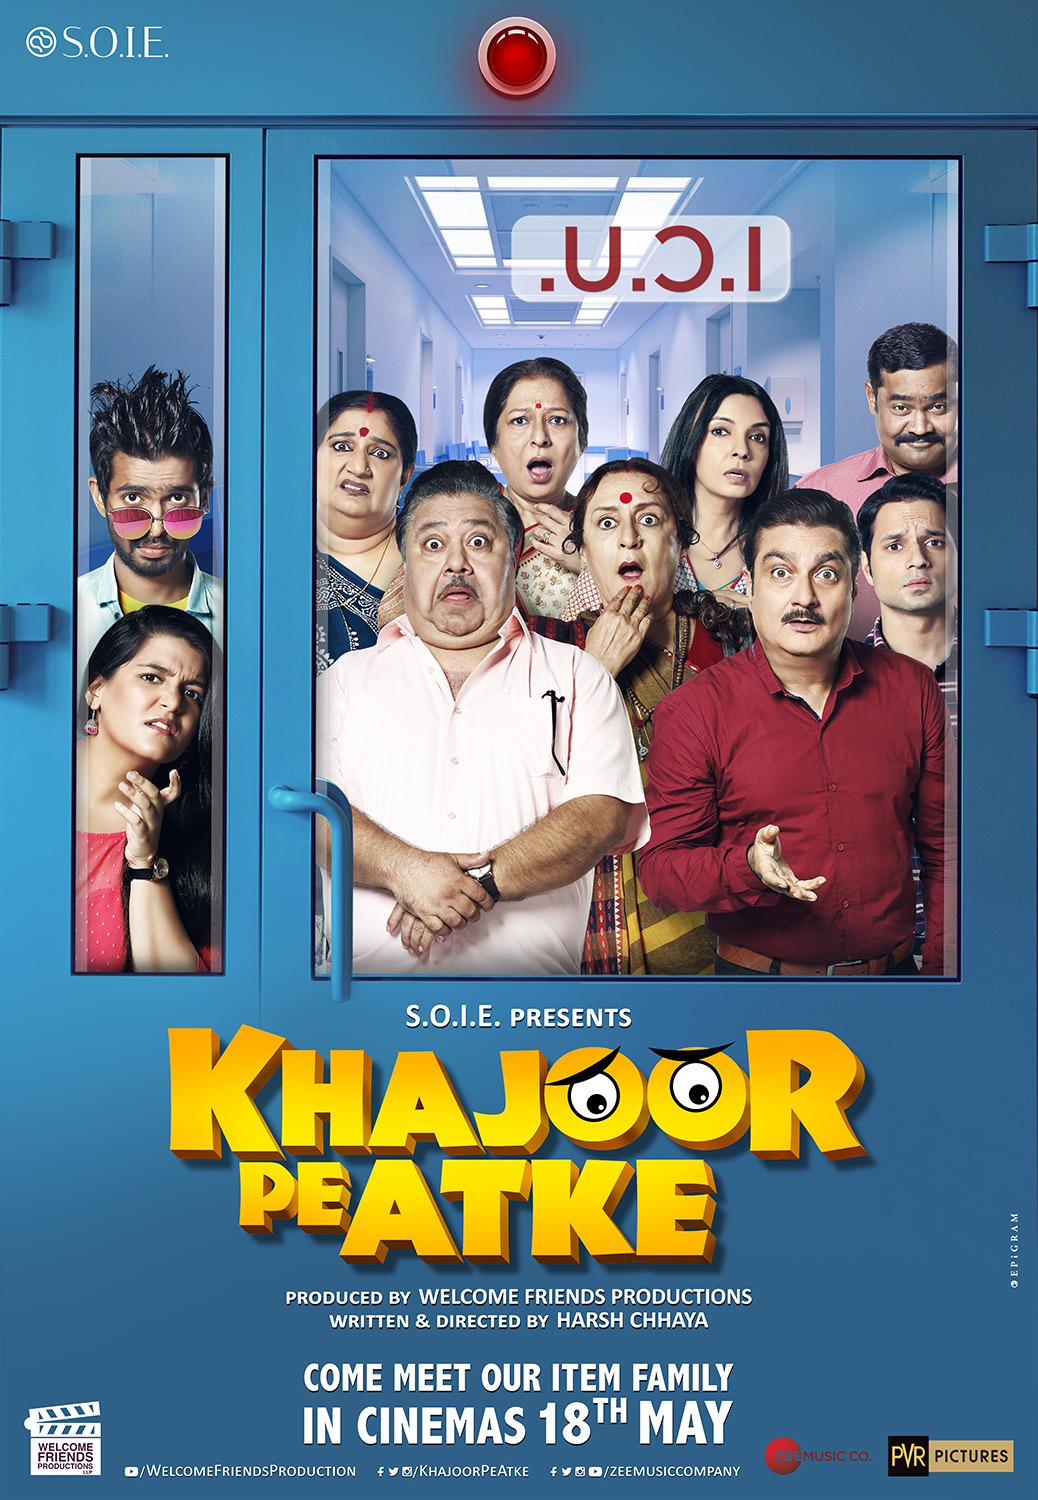 Extra Large Movie Poster Image for Khajoor Pe Atke (#1 of 3)